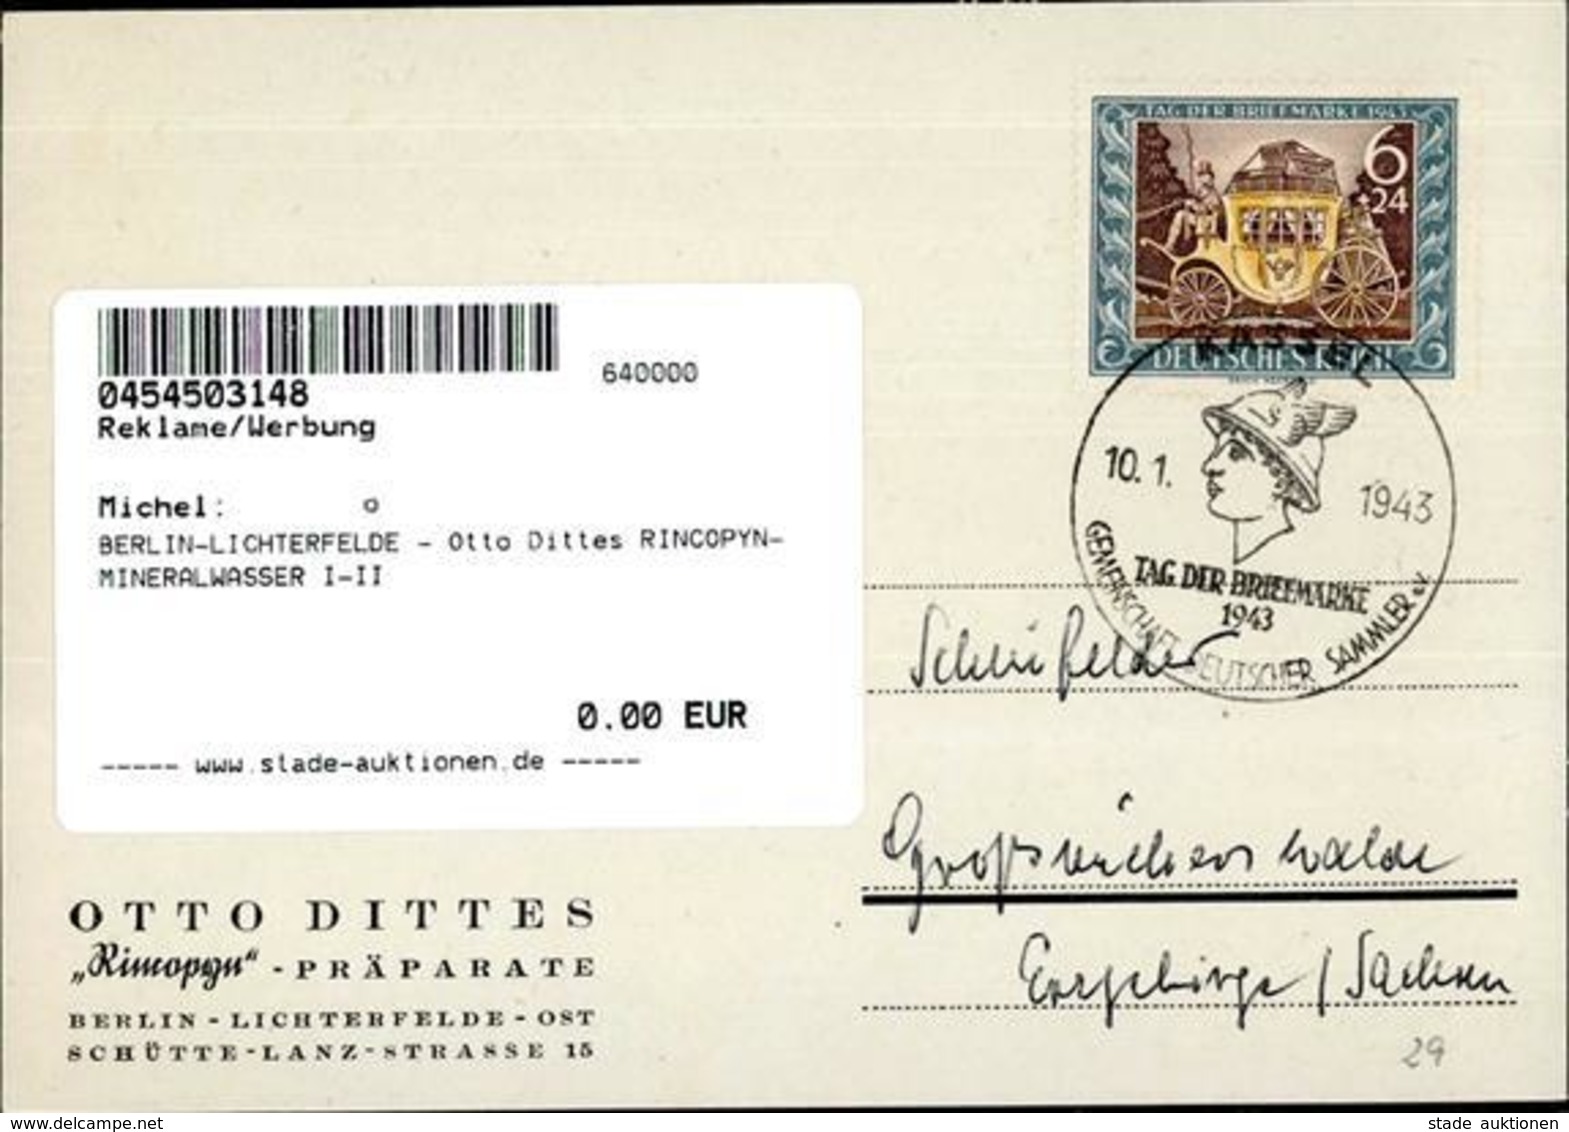 BERLIN-LICHTERFELDE - Otto Dittes RINCOPYN-MINERALWASSER I-II - Werbepostkarten